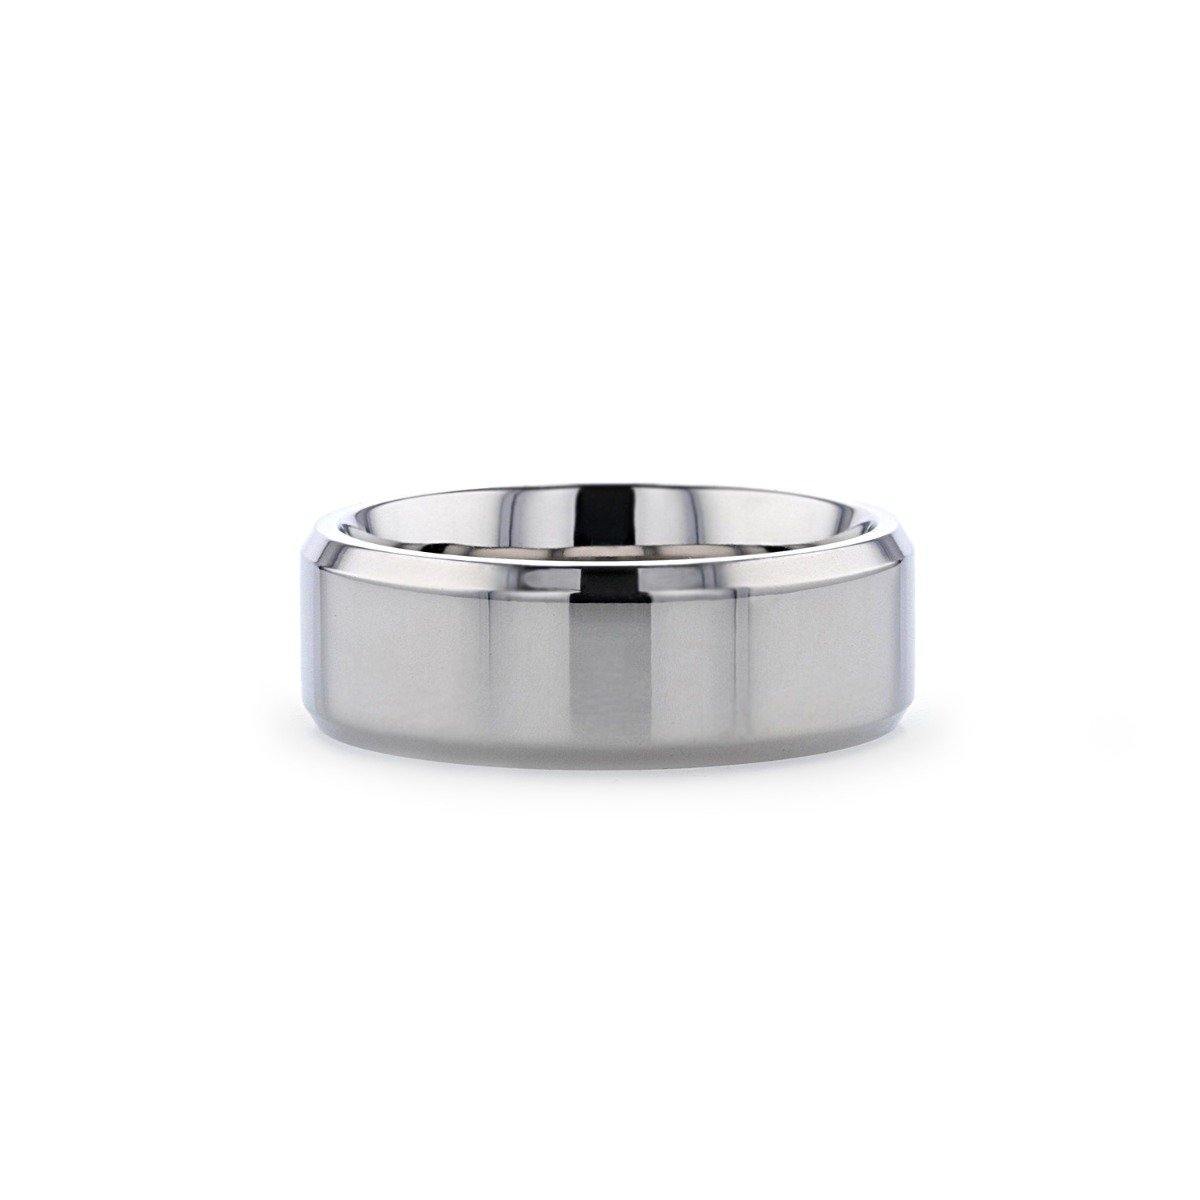 CORONAL - Men’s Polished Finish Beveled Edges Titanium Wedding Ring with Raised Center - 6mm & 8mm - The Rutile Ltd